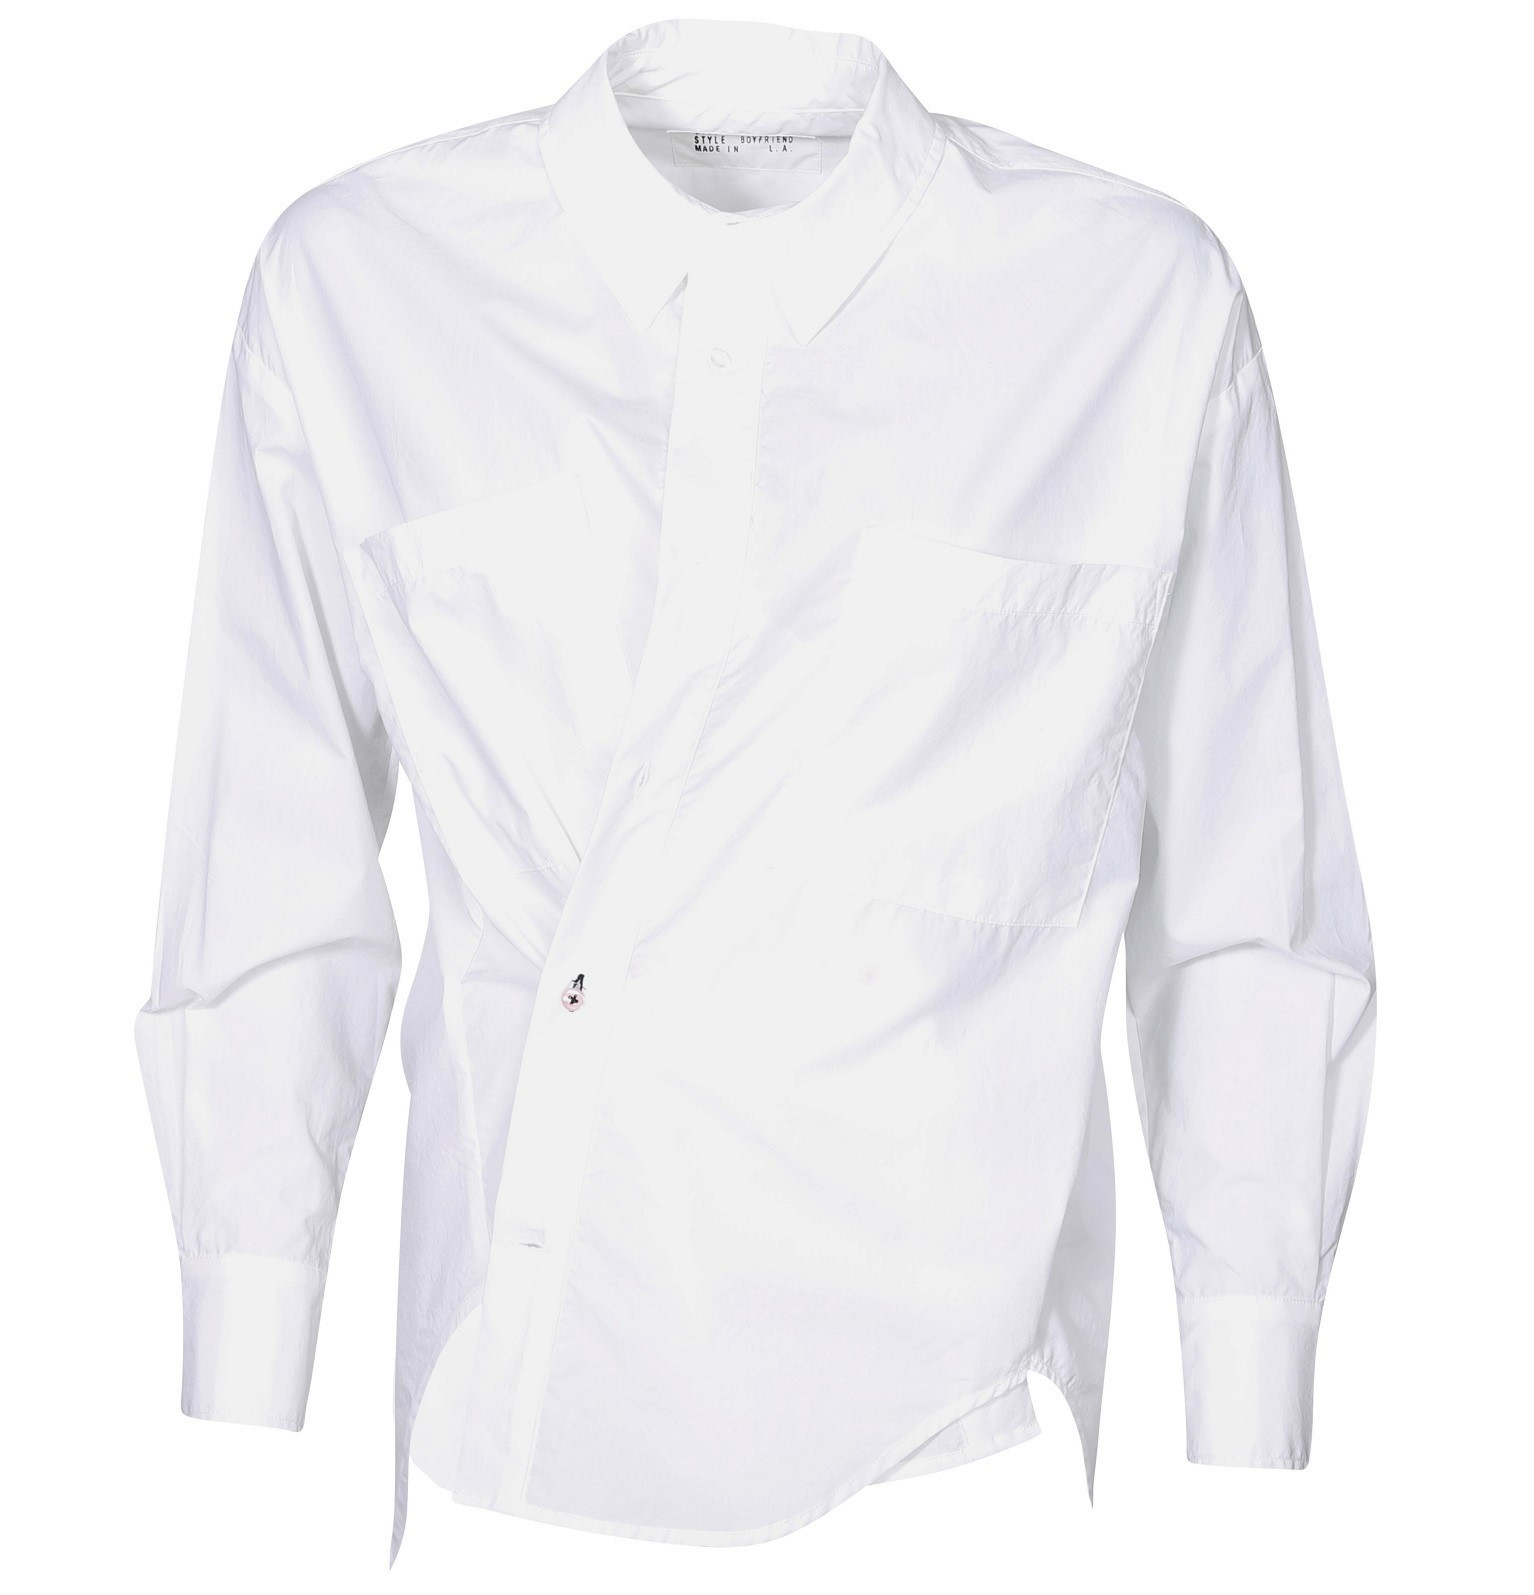 WEARCISCO The Boyfriend Shirt in White